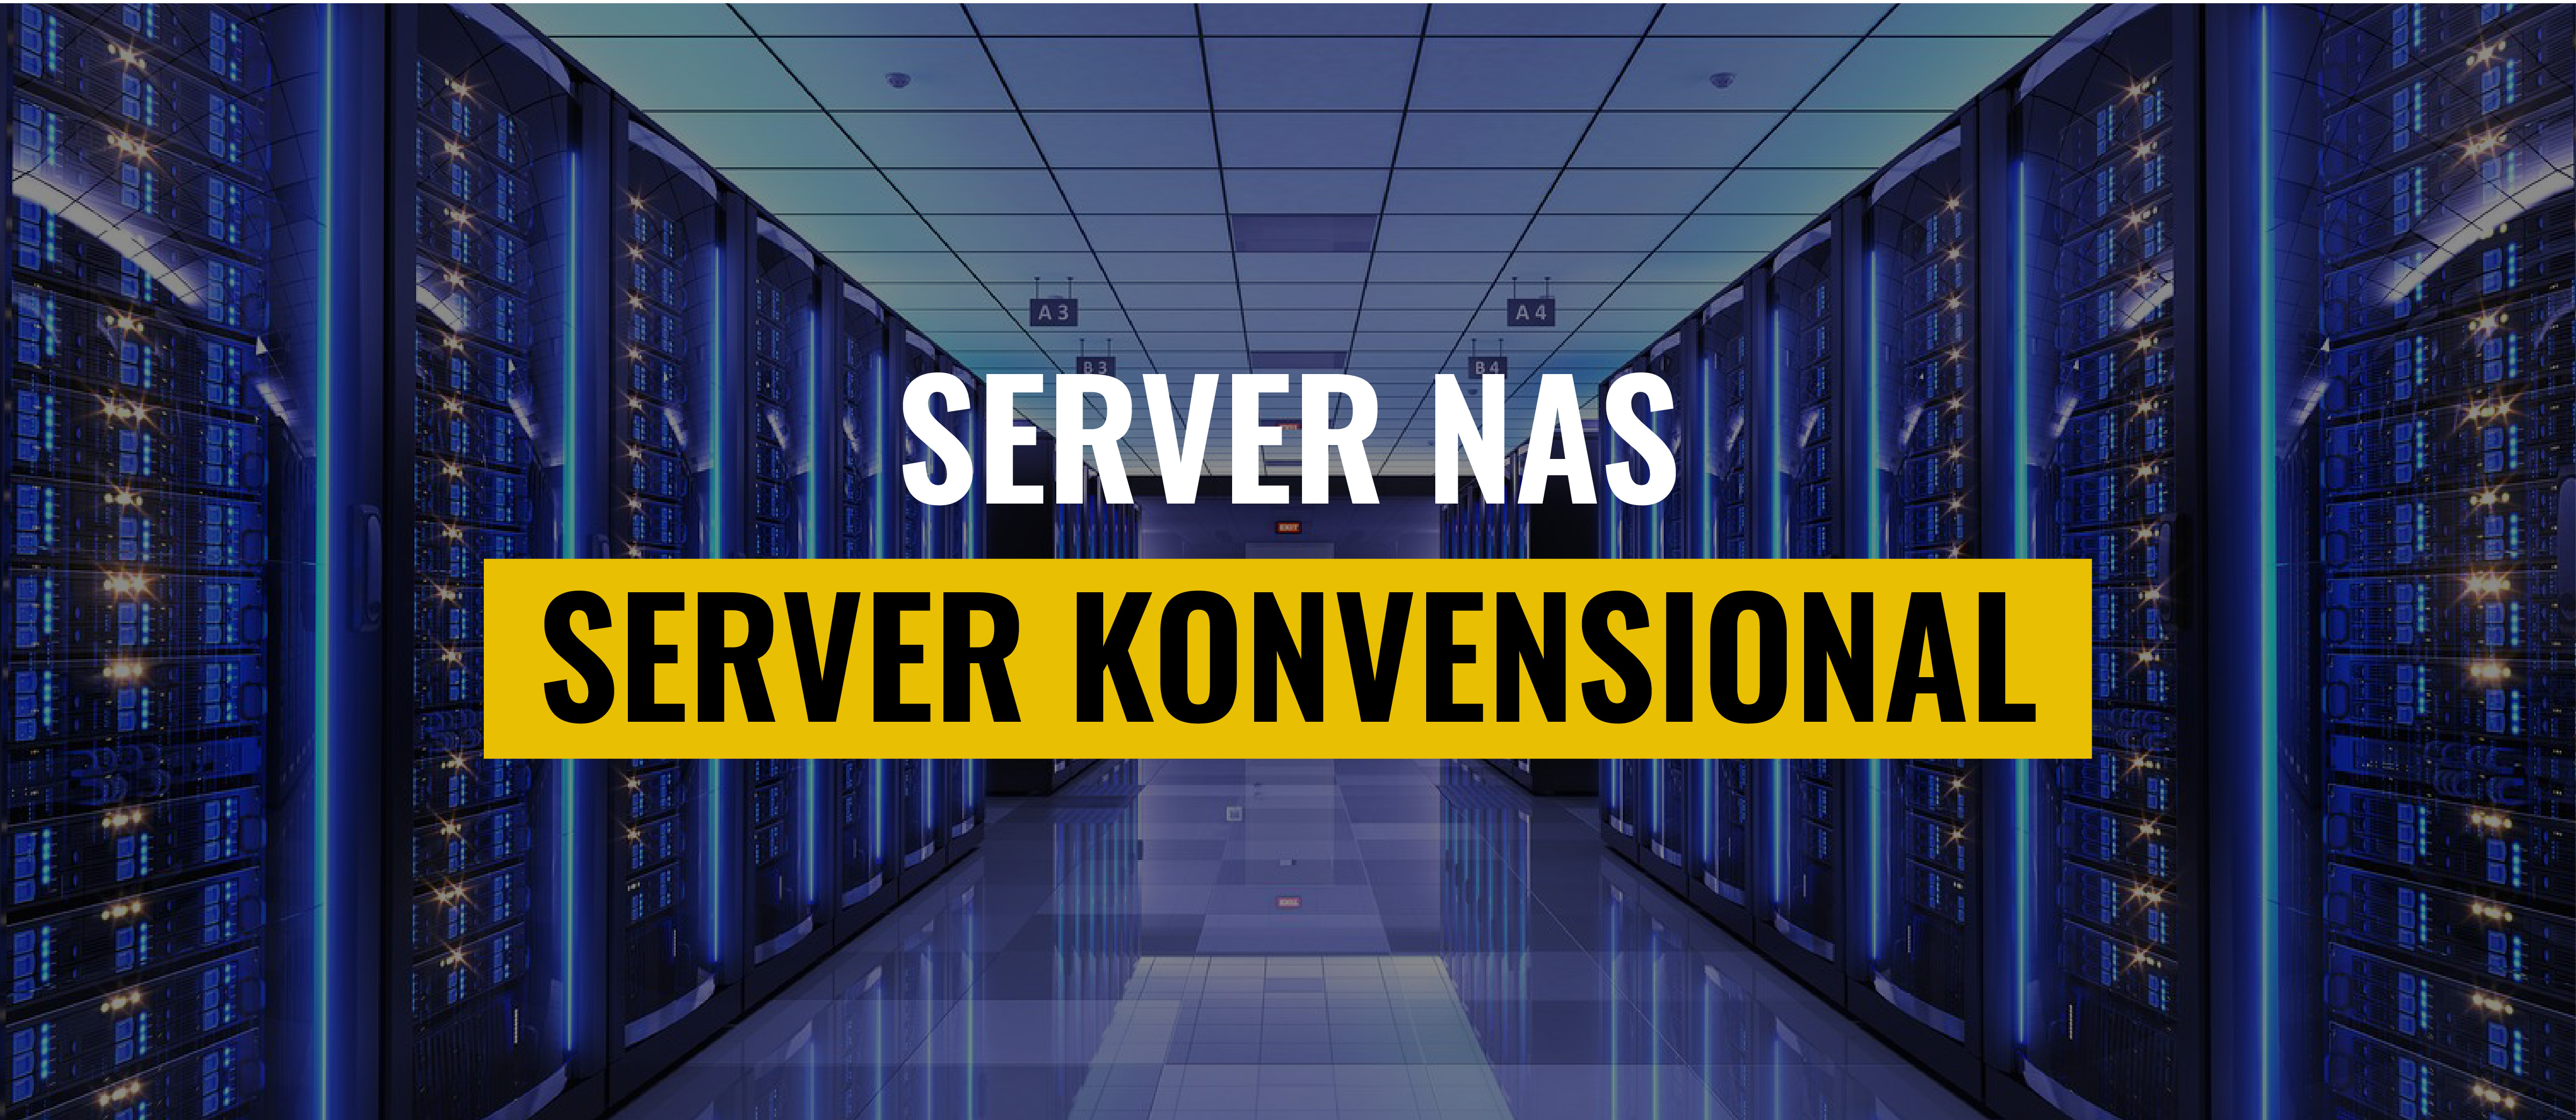 Bedanya Server NAS Dan Server Konvensional